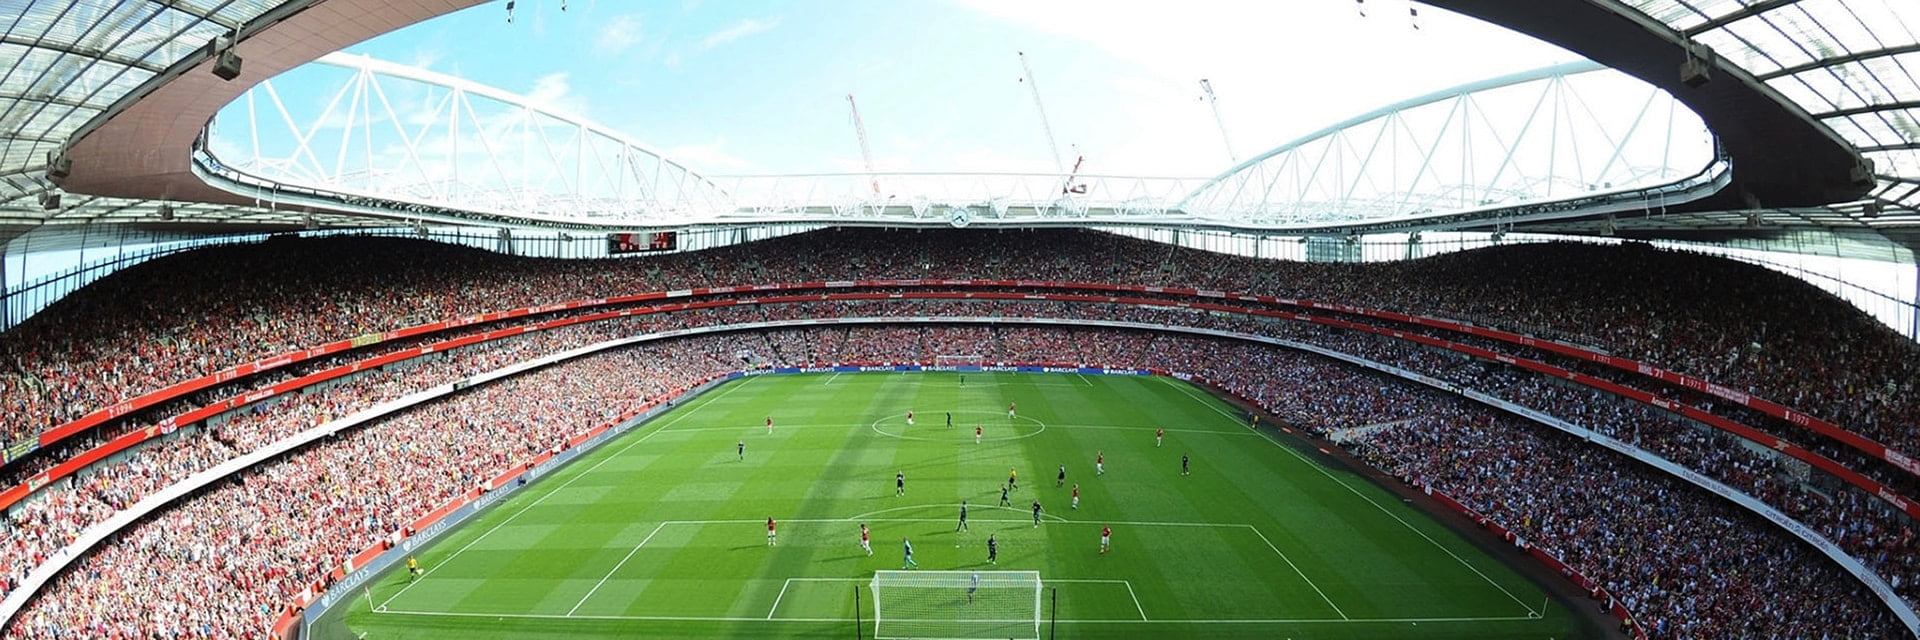 Arsenal FC - Tottenham Hotspur, 6 oktoberpå 12:30